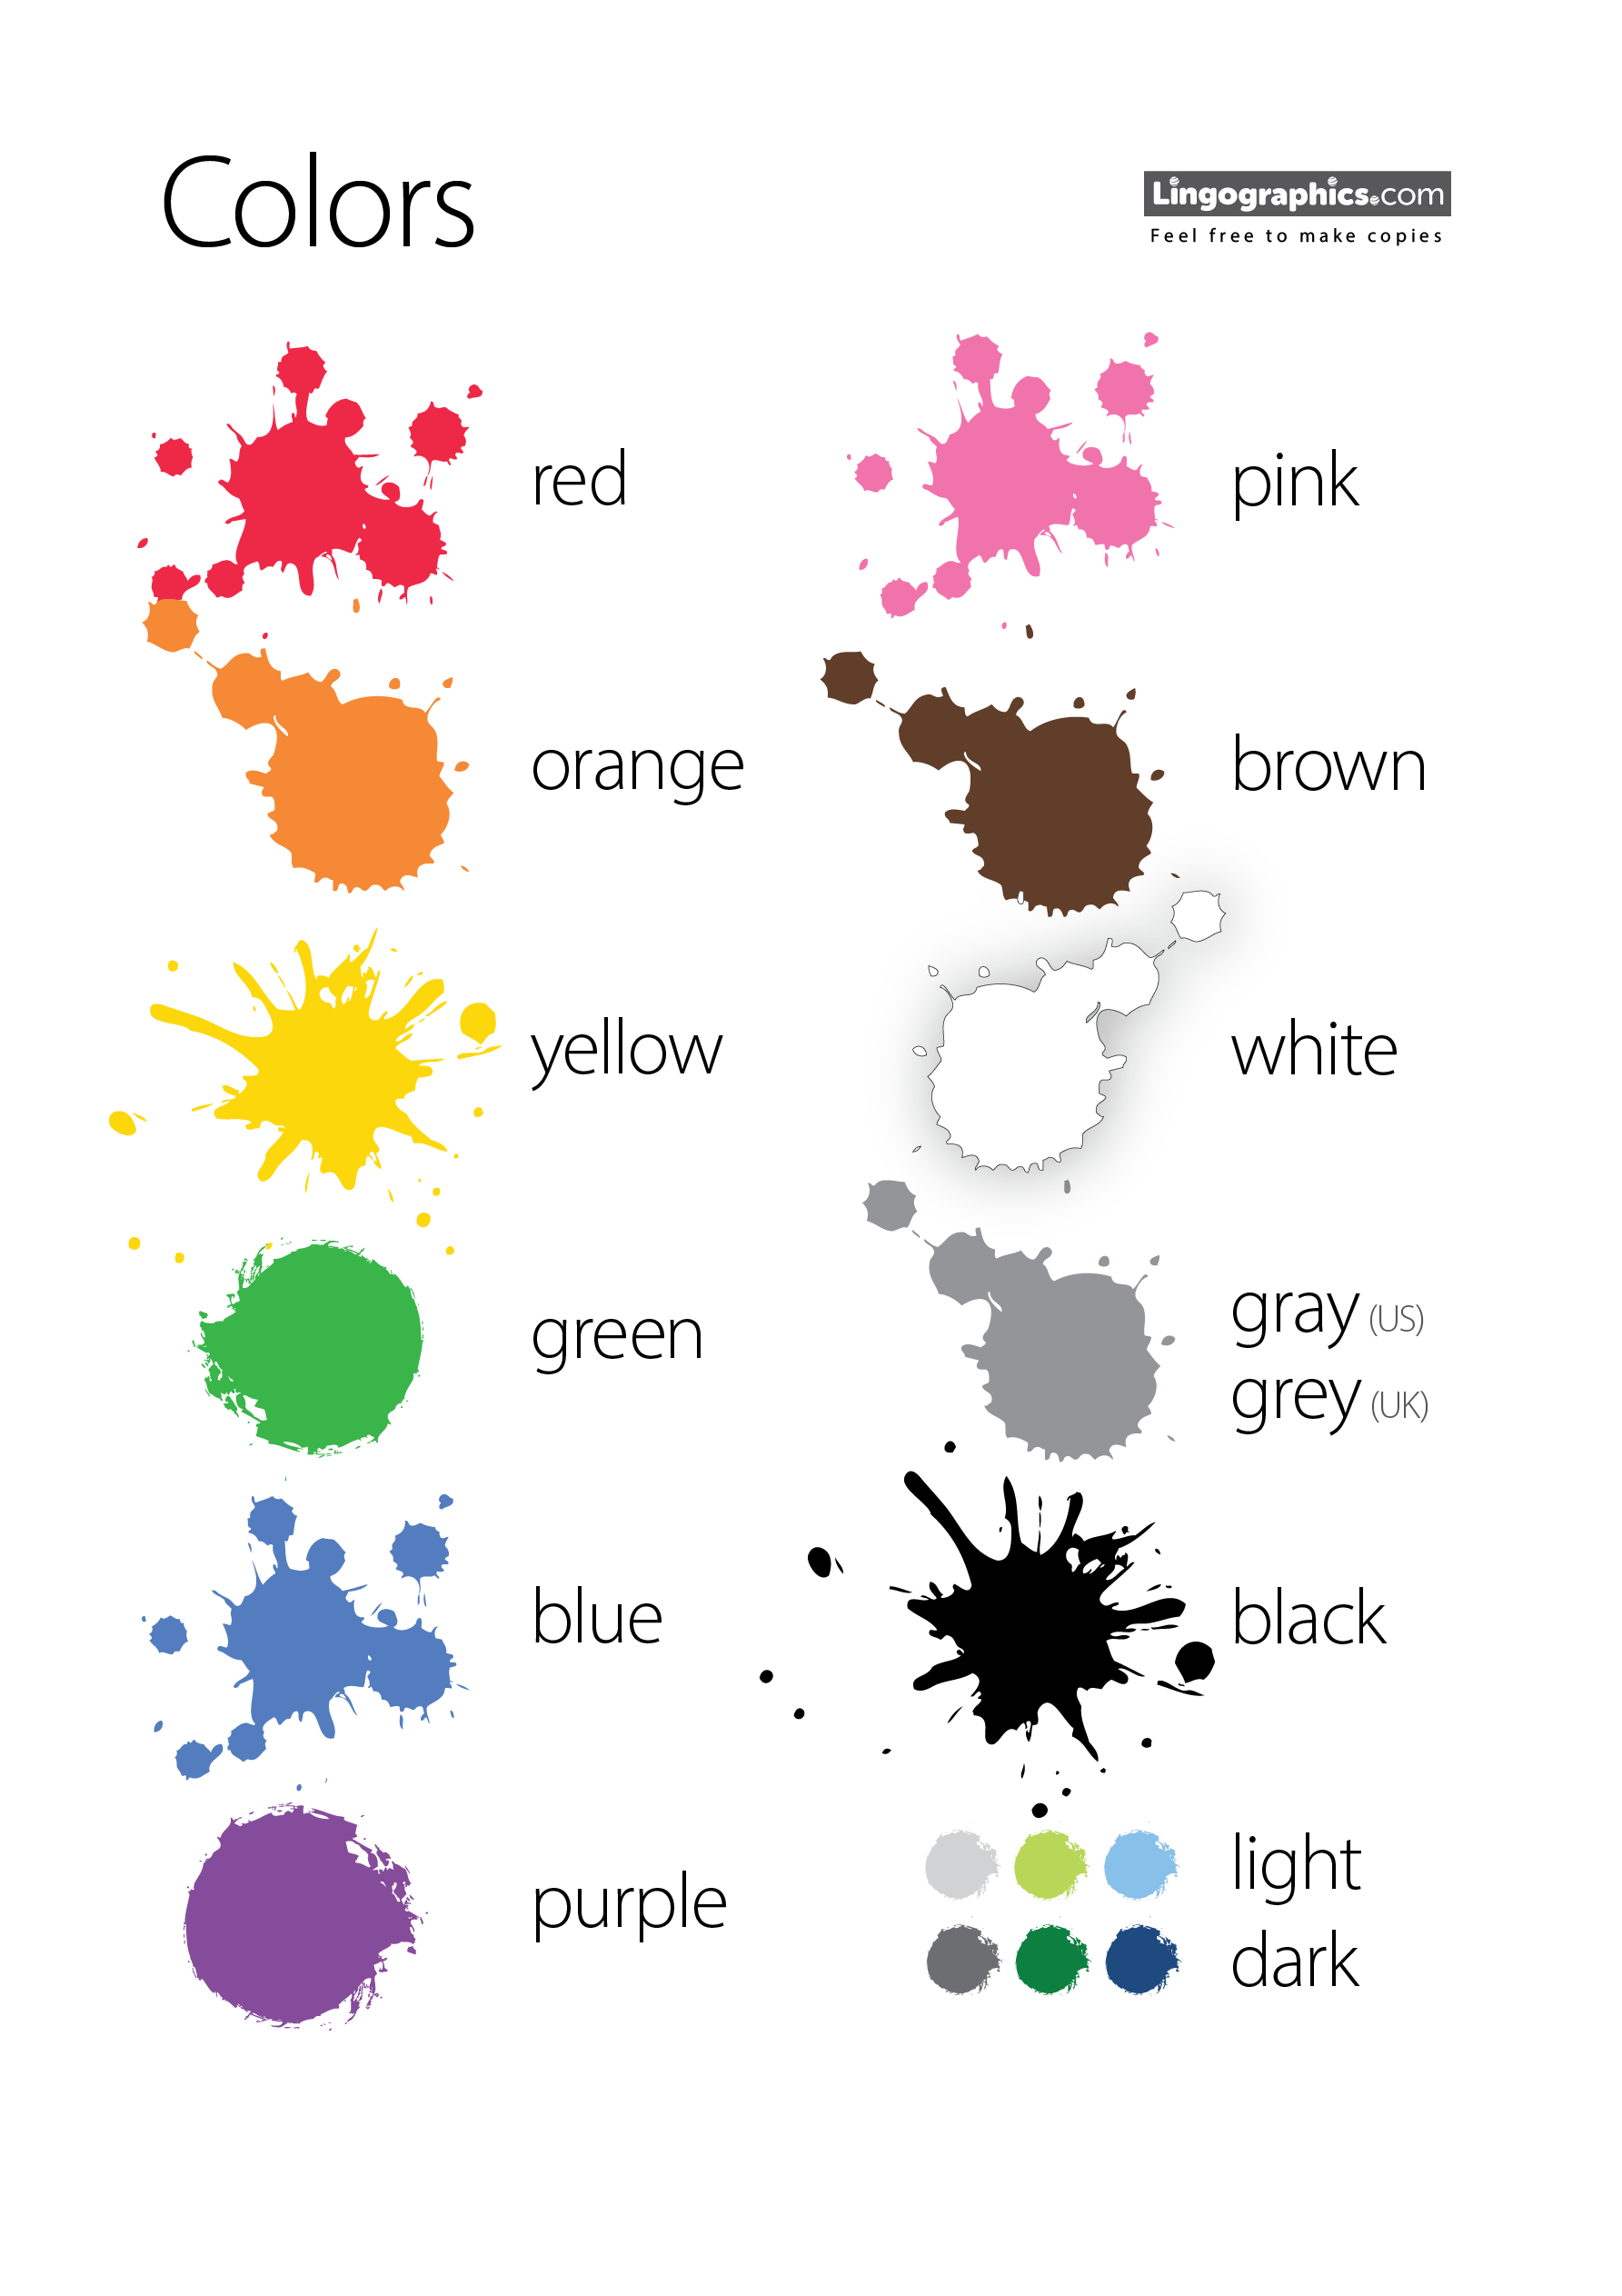 esl-colors-lingographics